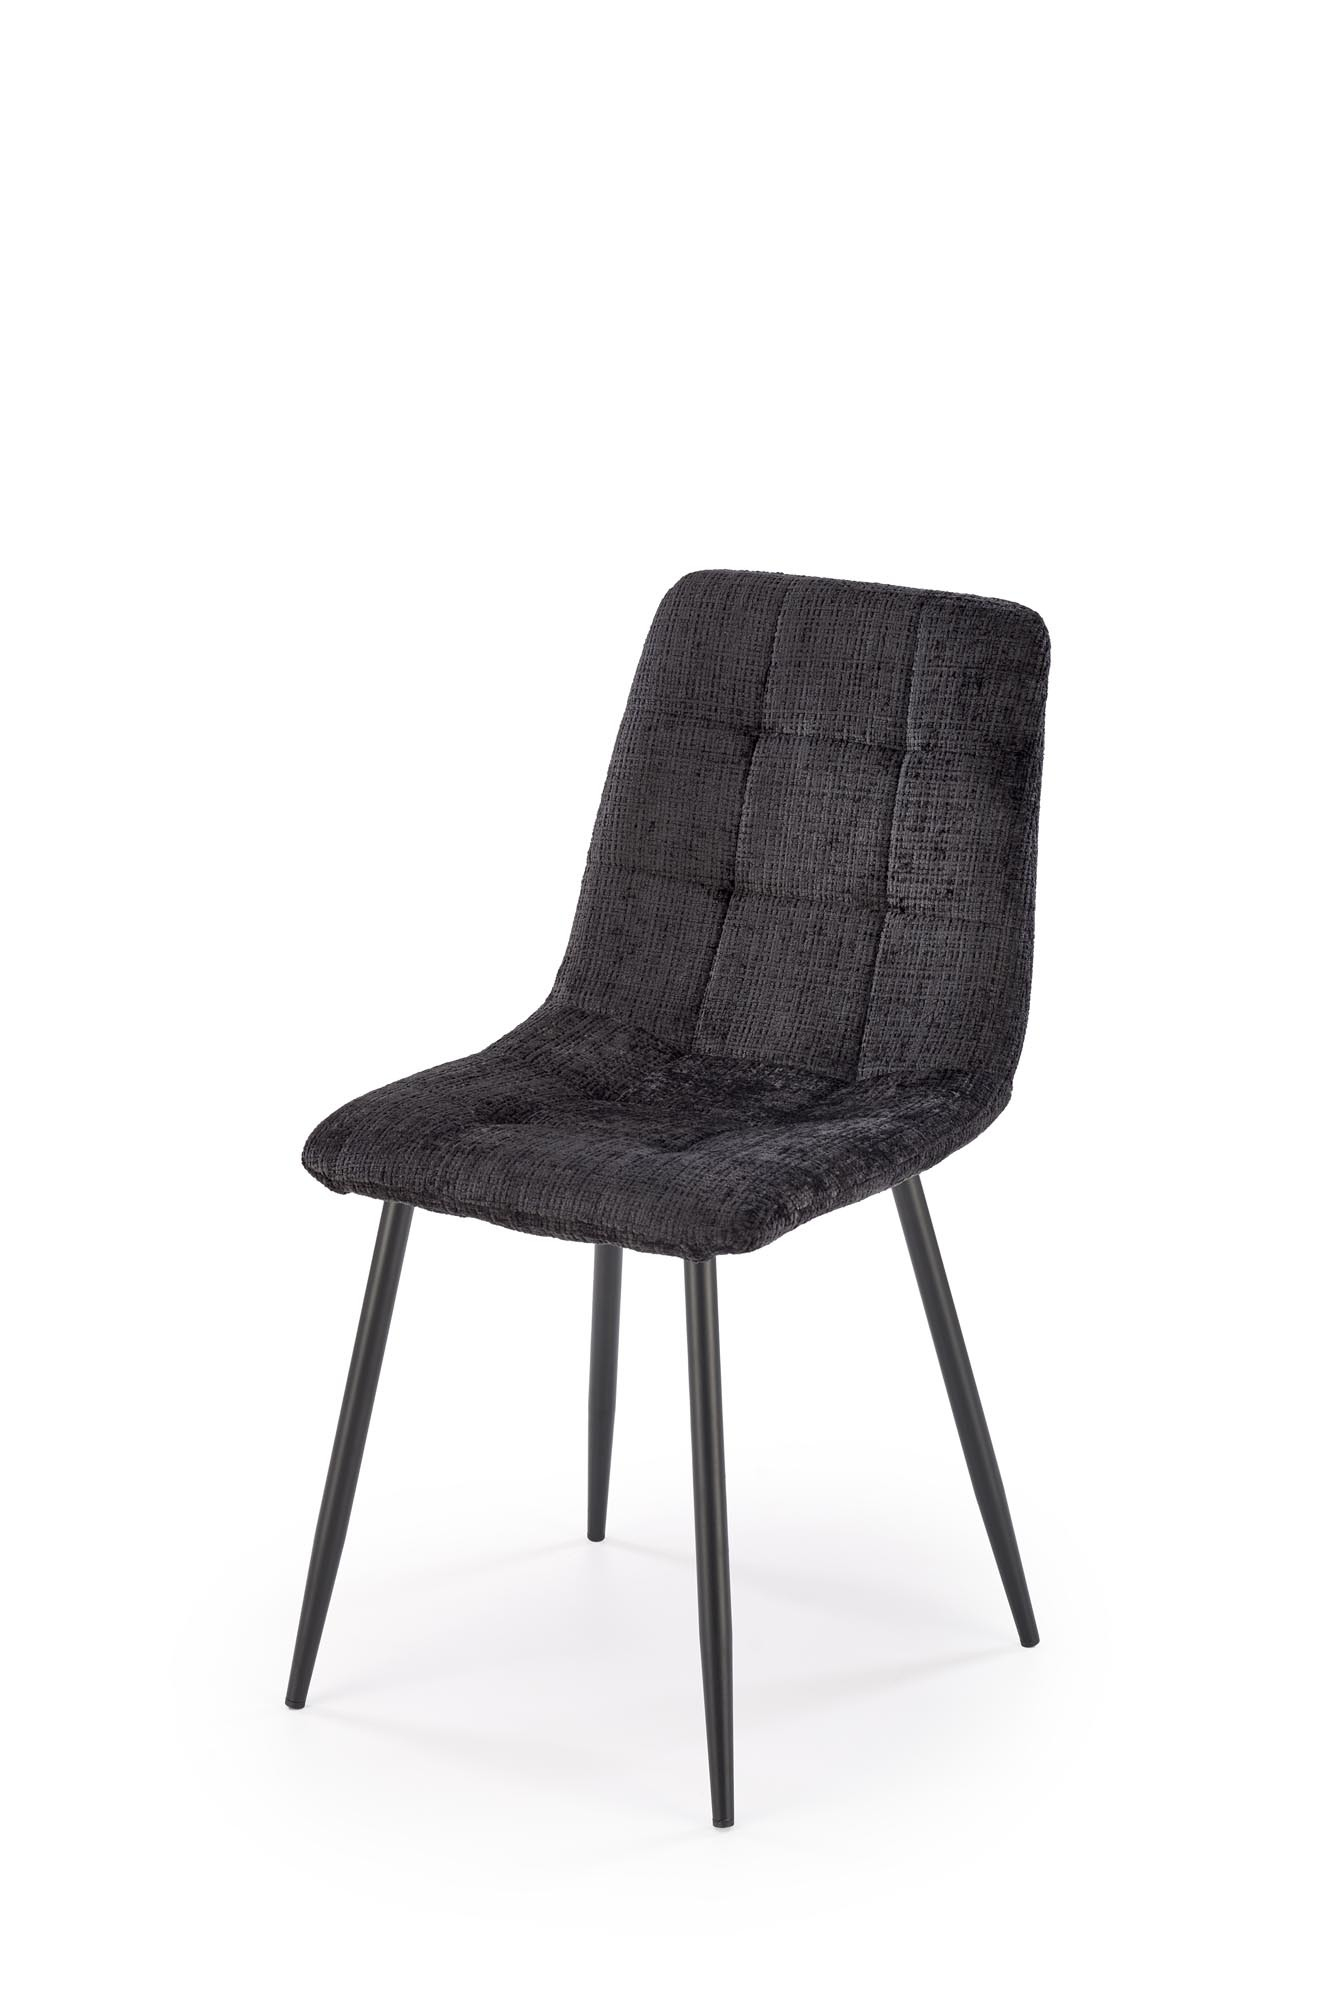 K547 krzesło czarny